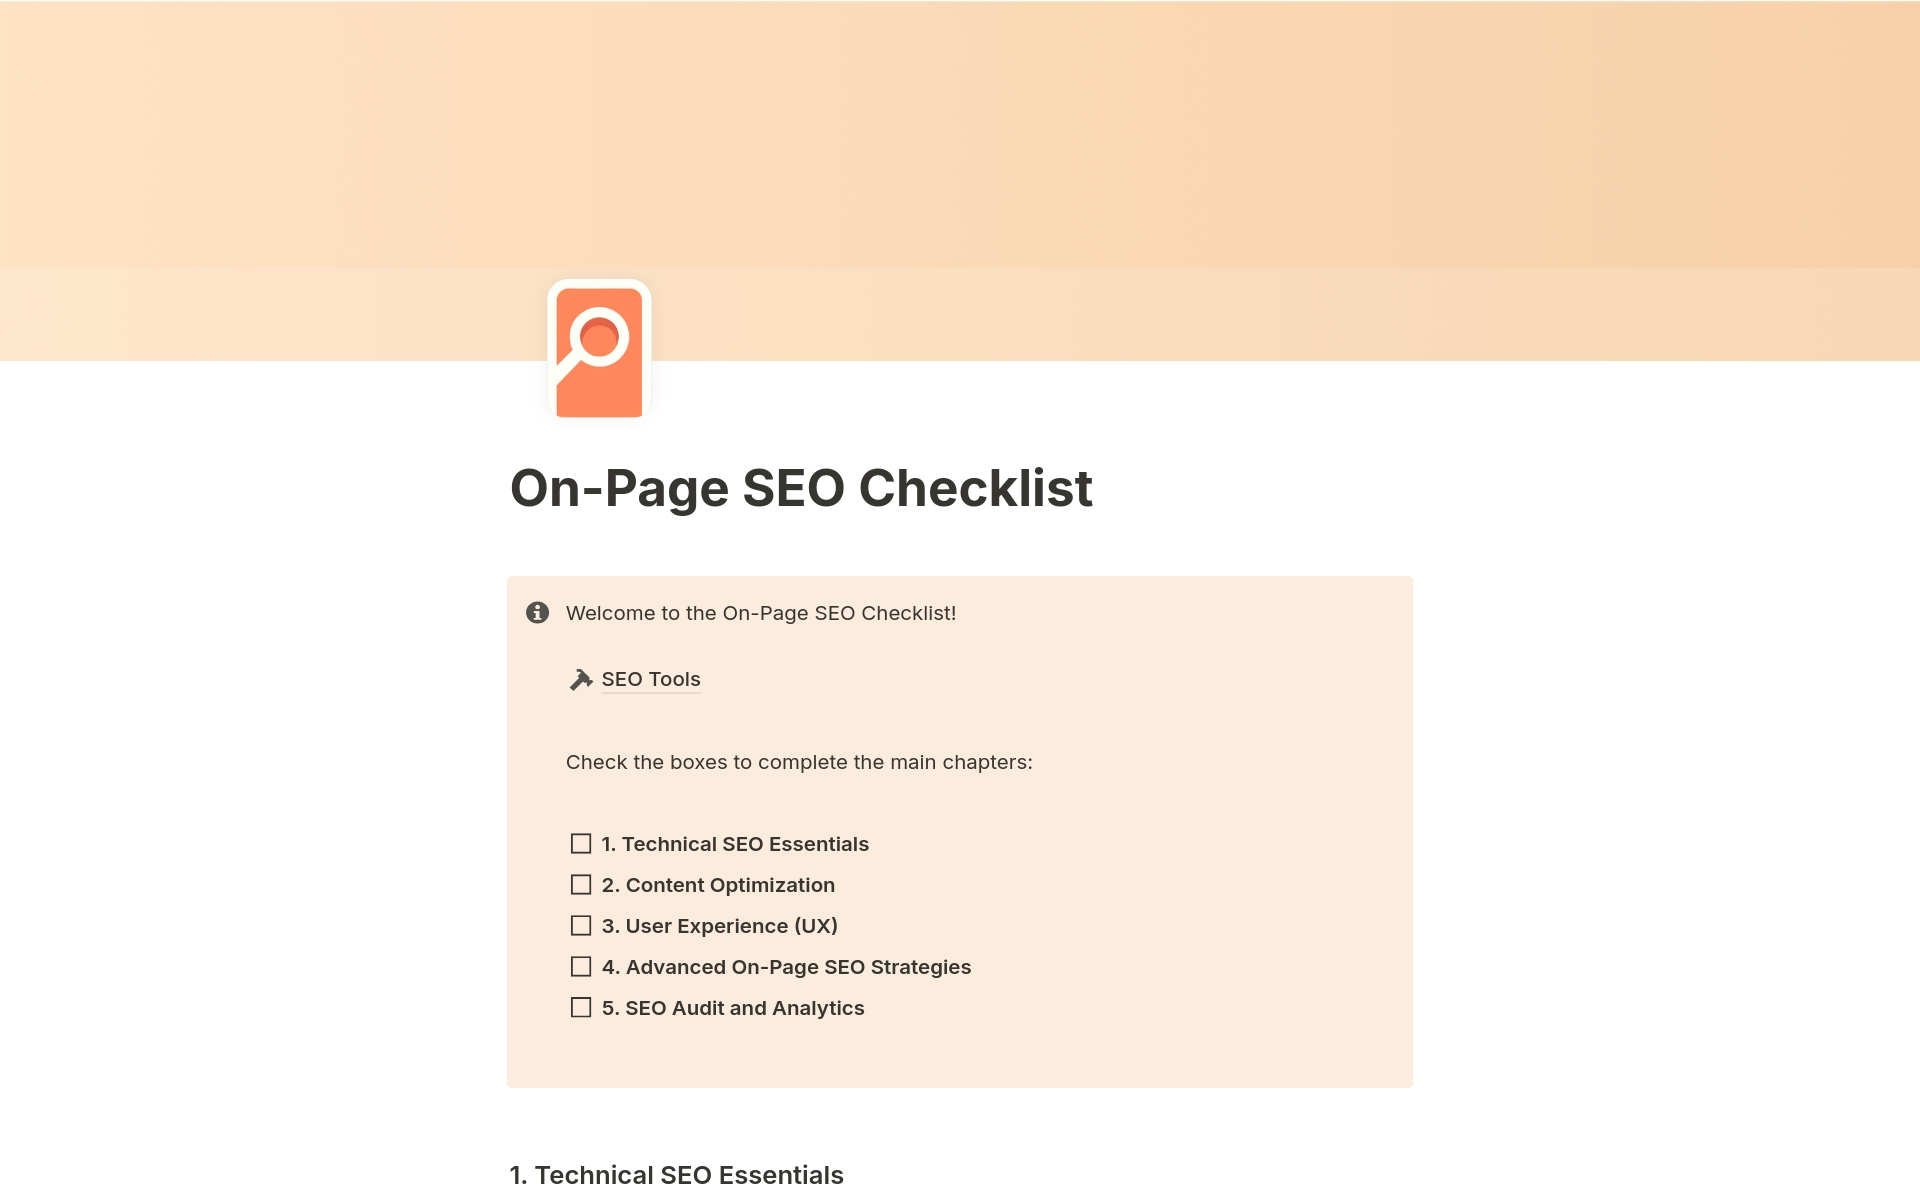 Uma prévia do modelo para On-Page SEO Checklist